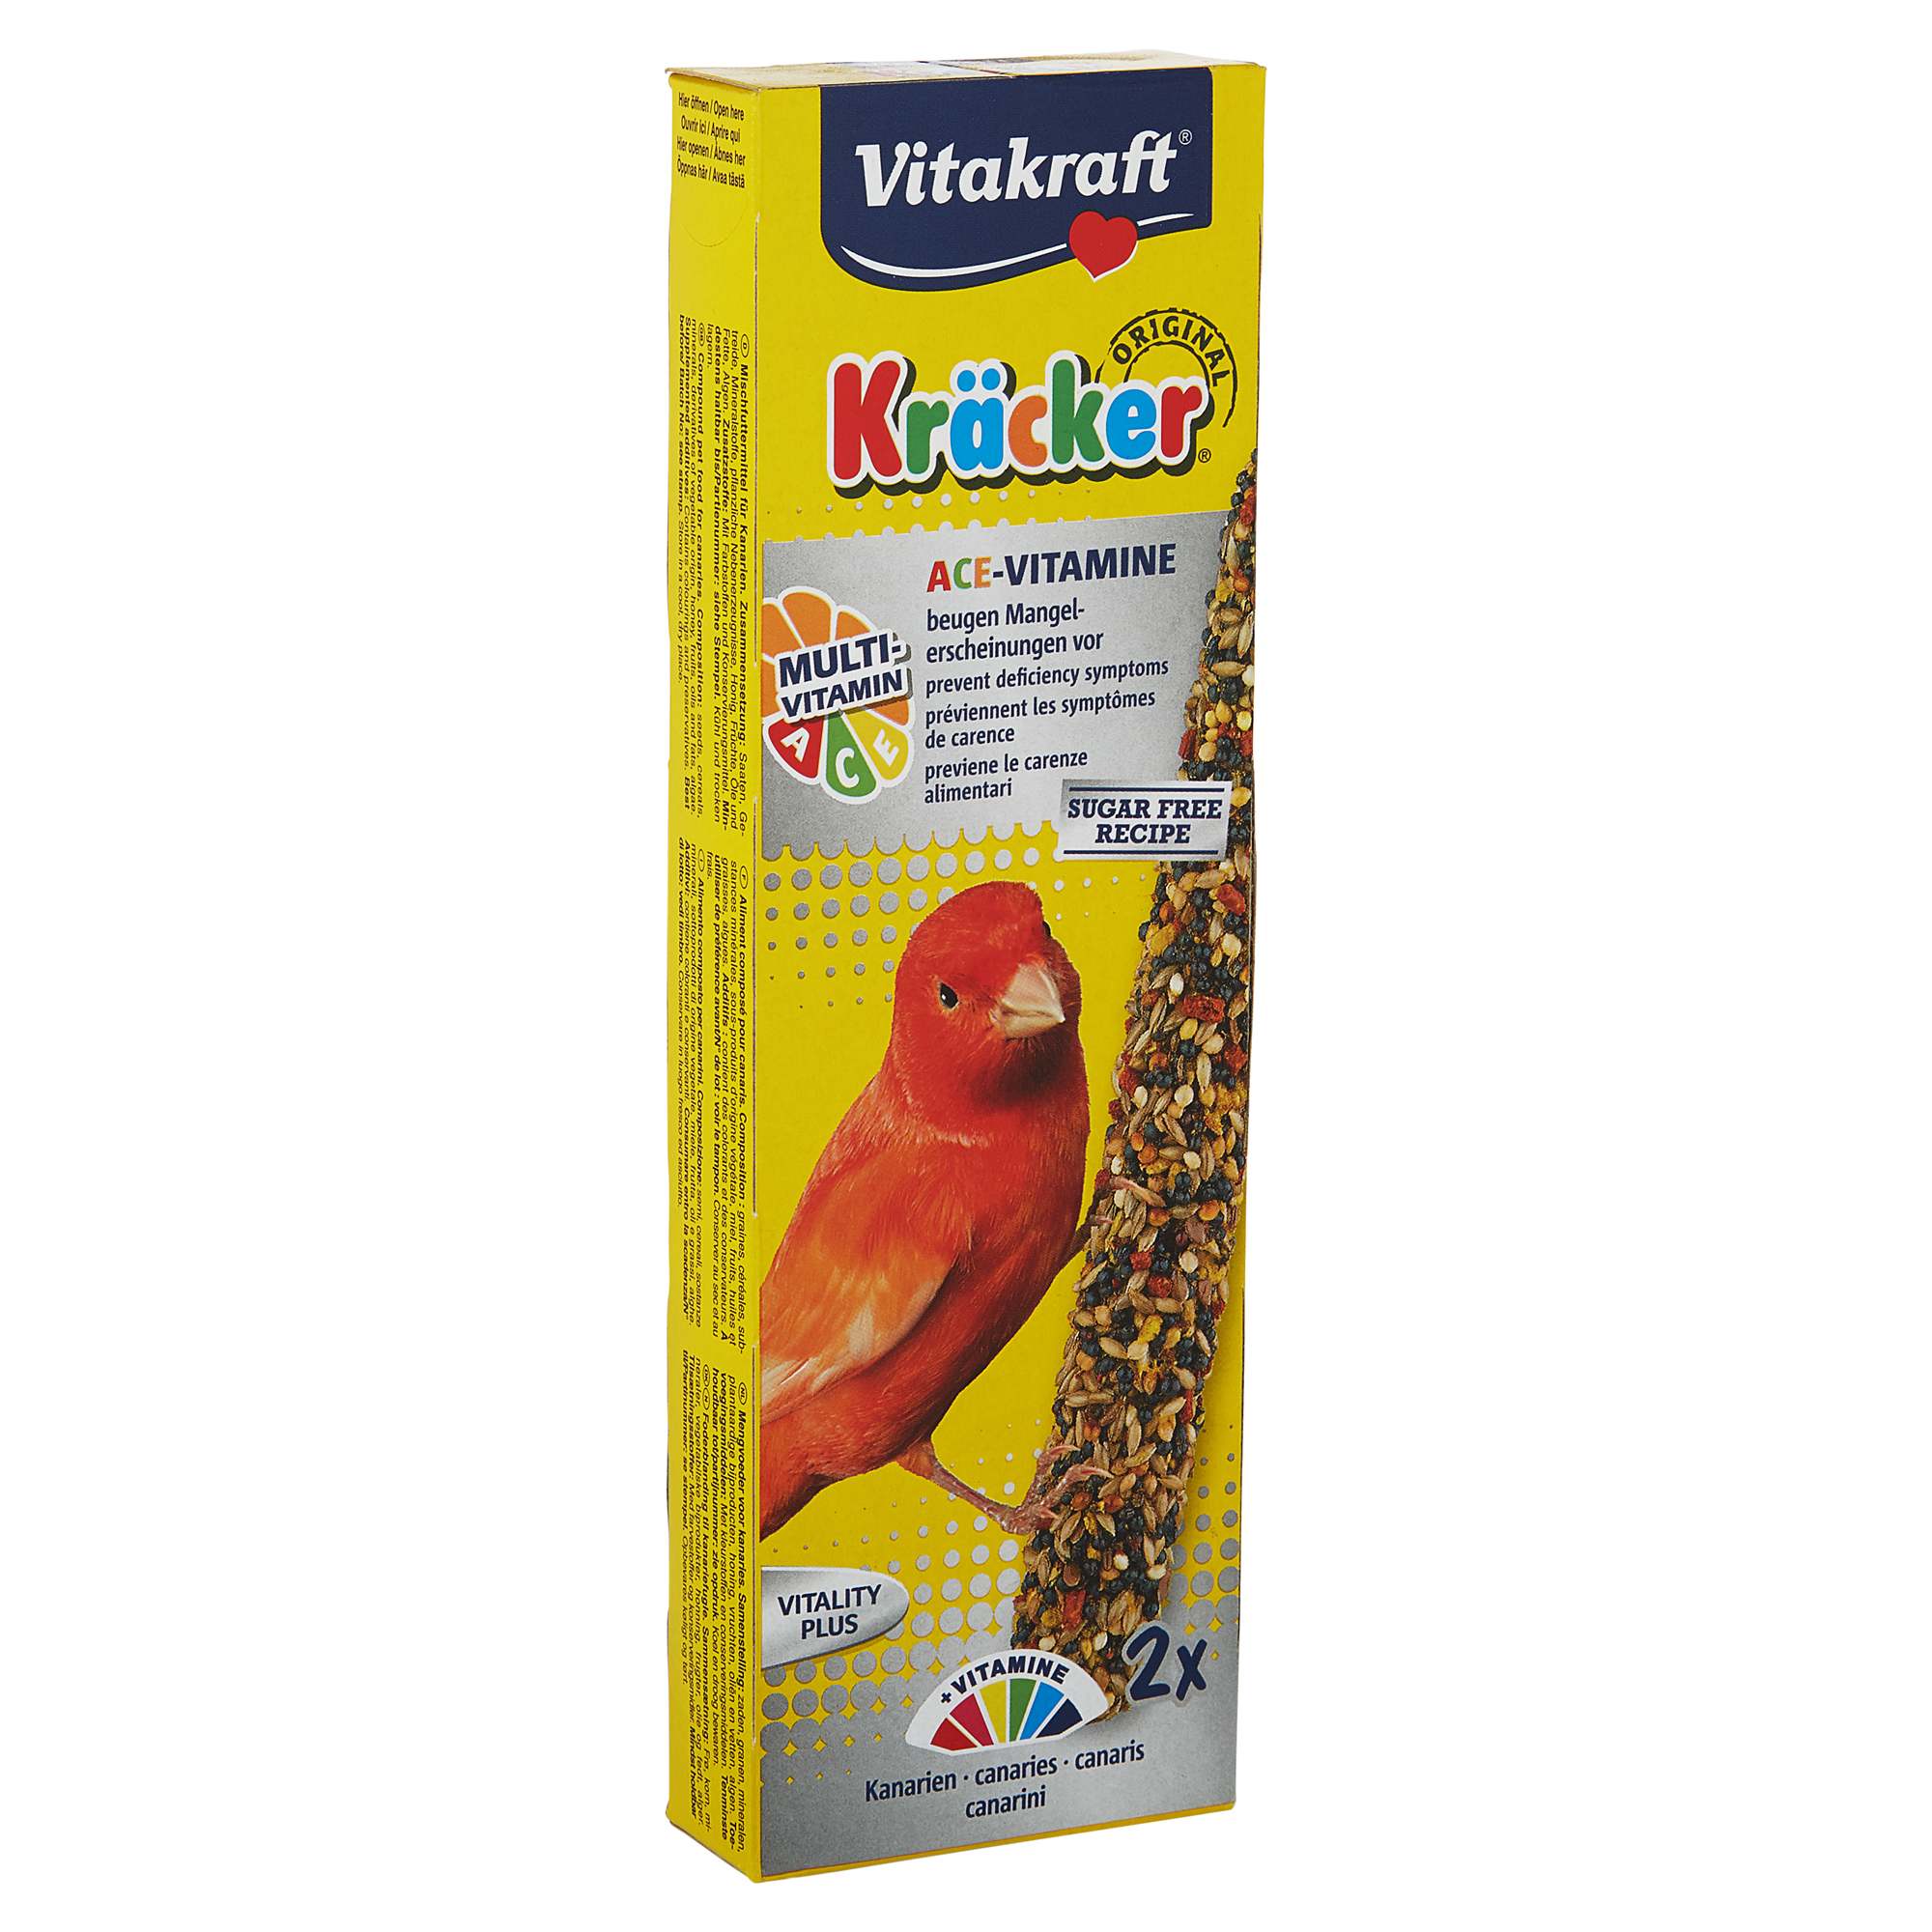 Vogelfutter Kräcker® Original Multivitamin 2 Stück für Kanarienvögel + product picture